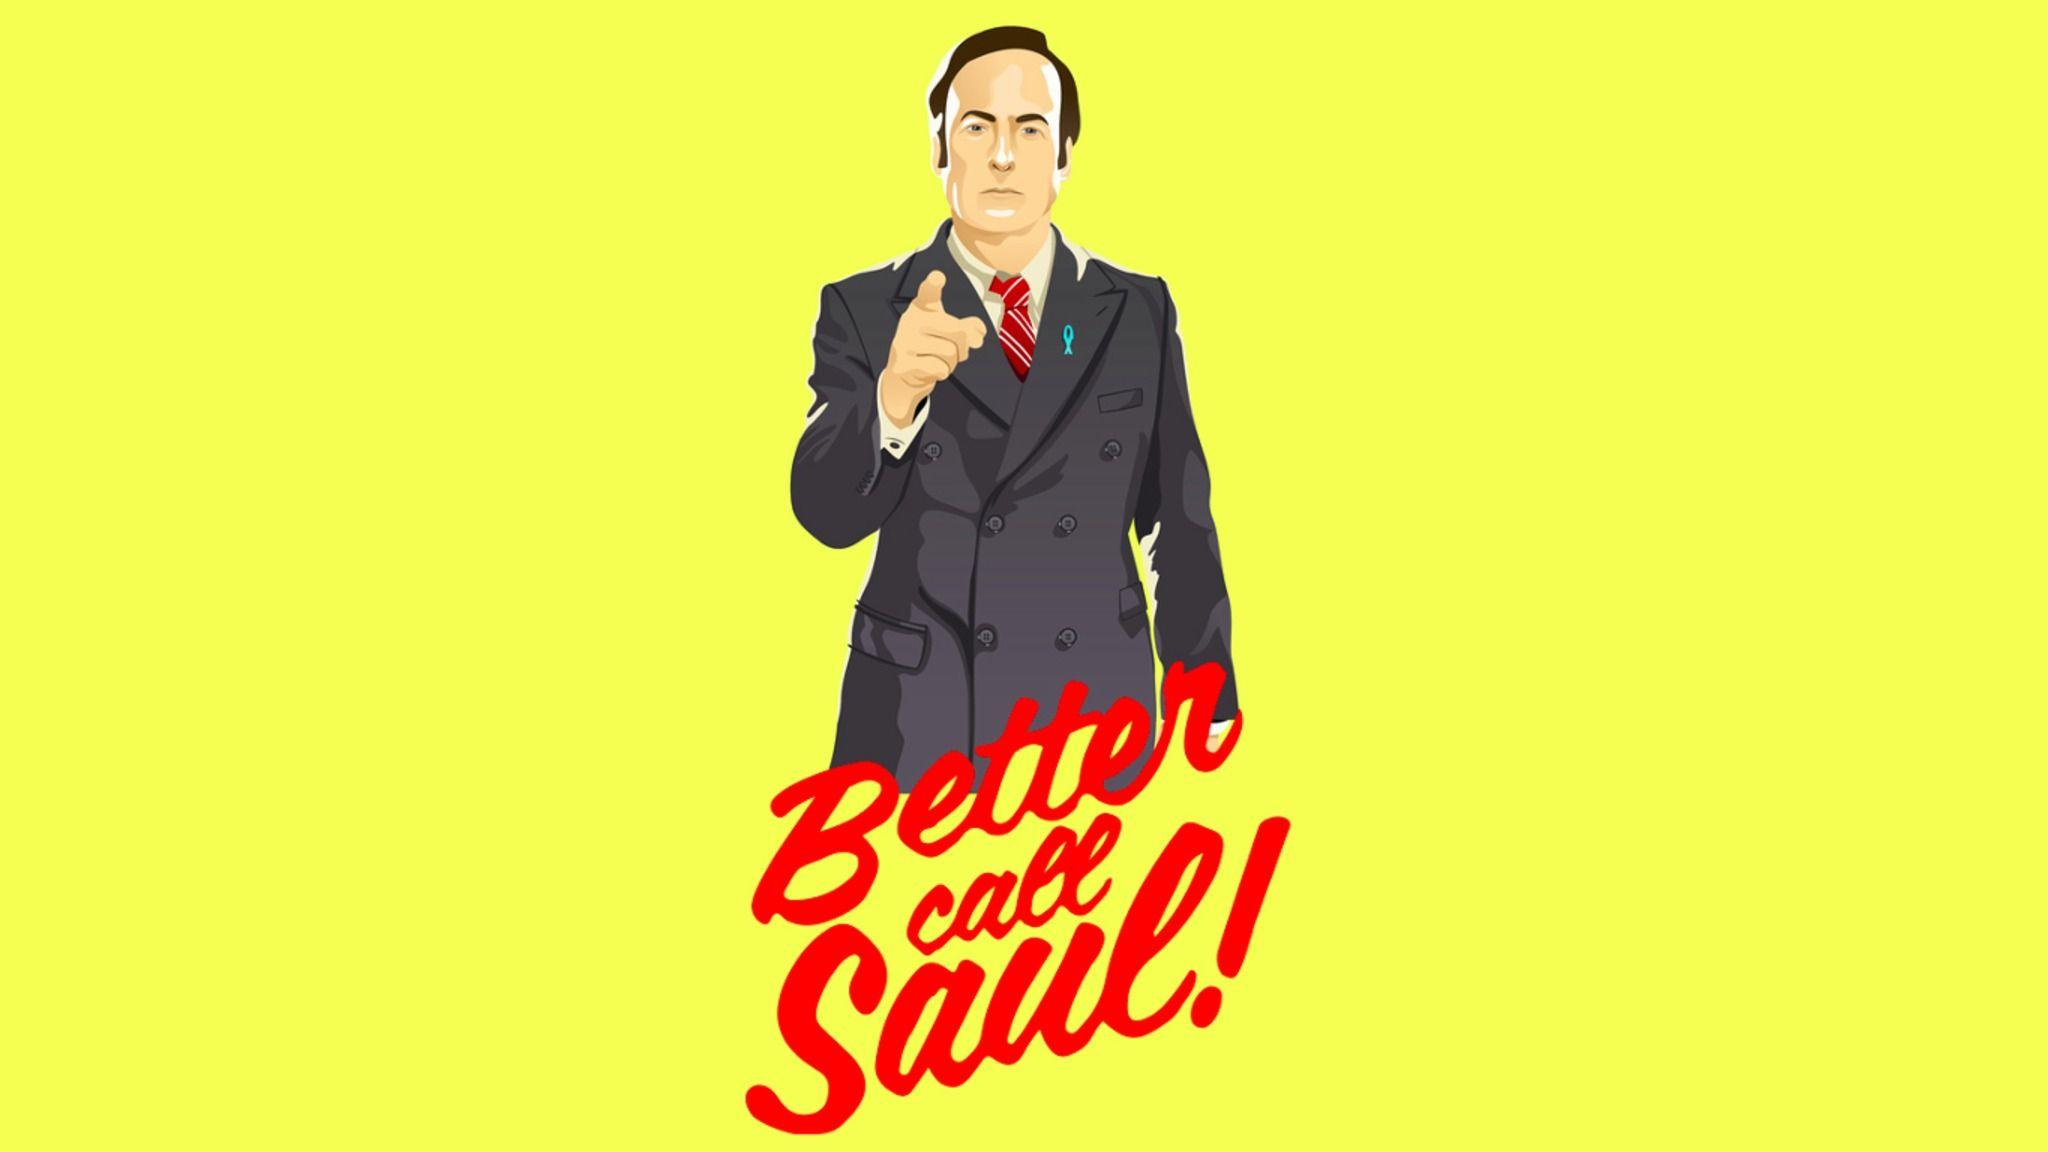 Better Call Saul HD Wallpaper 9. TV Series Wallpaper